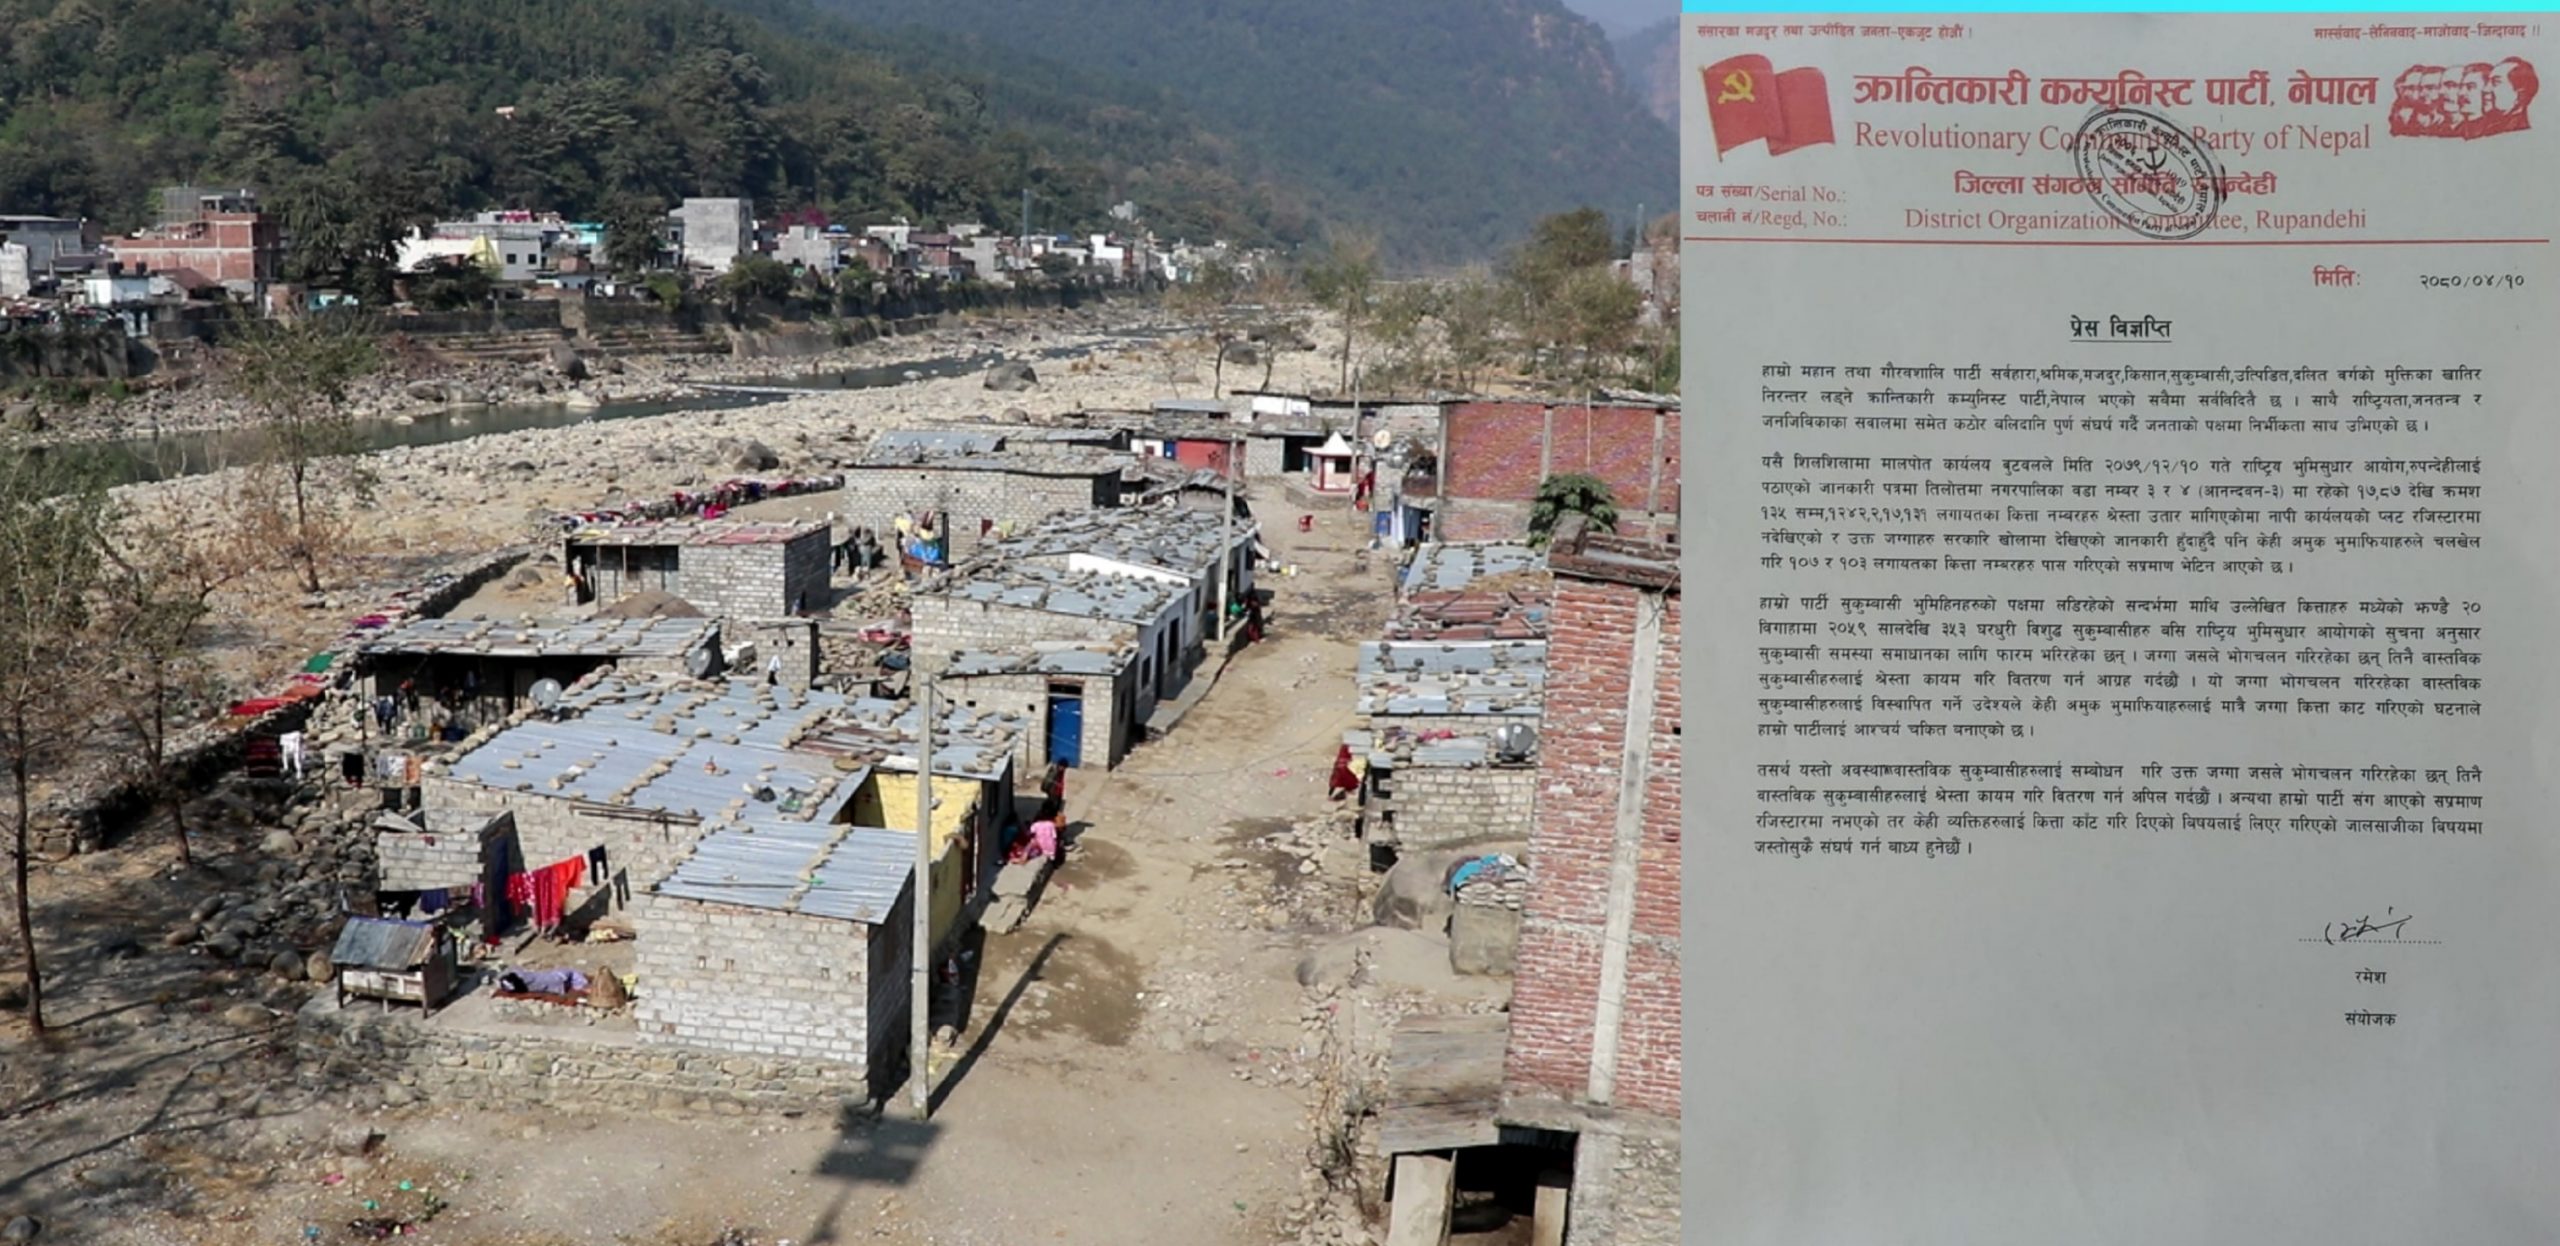 वास्तविक सुकुम्बासीलाई श्रेस्ता कायम नगरिए कडा संघर्ष गर्छौं : क्रान्तिकारी कम्युनिस्ट पार्टी, नेपाल